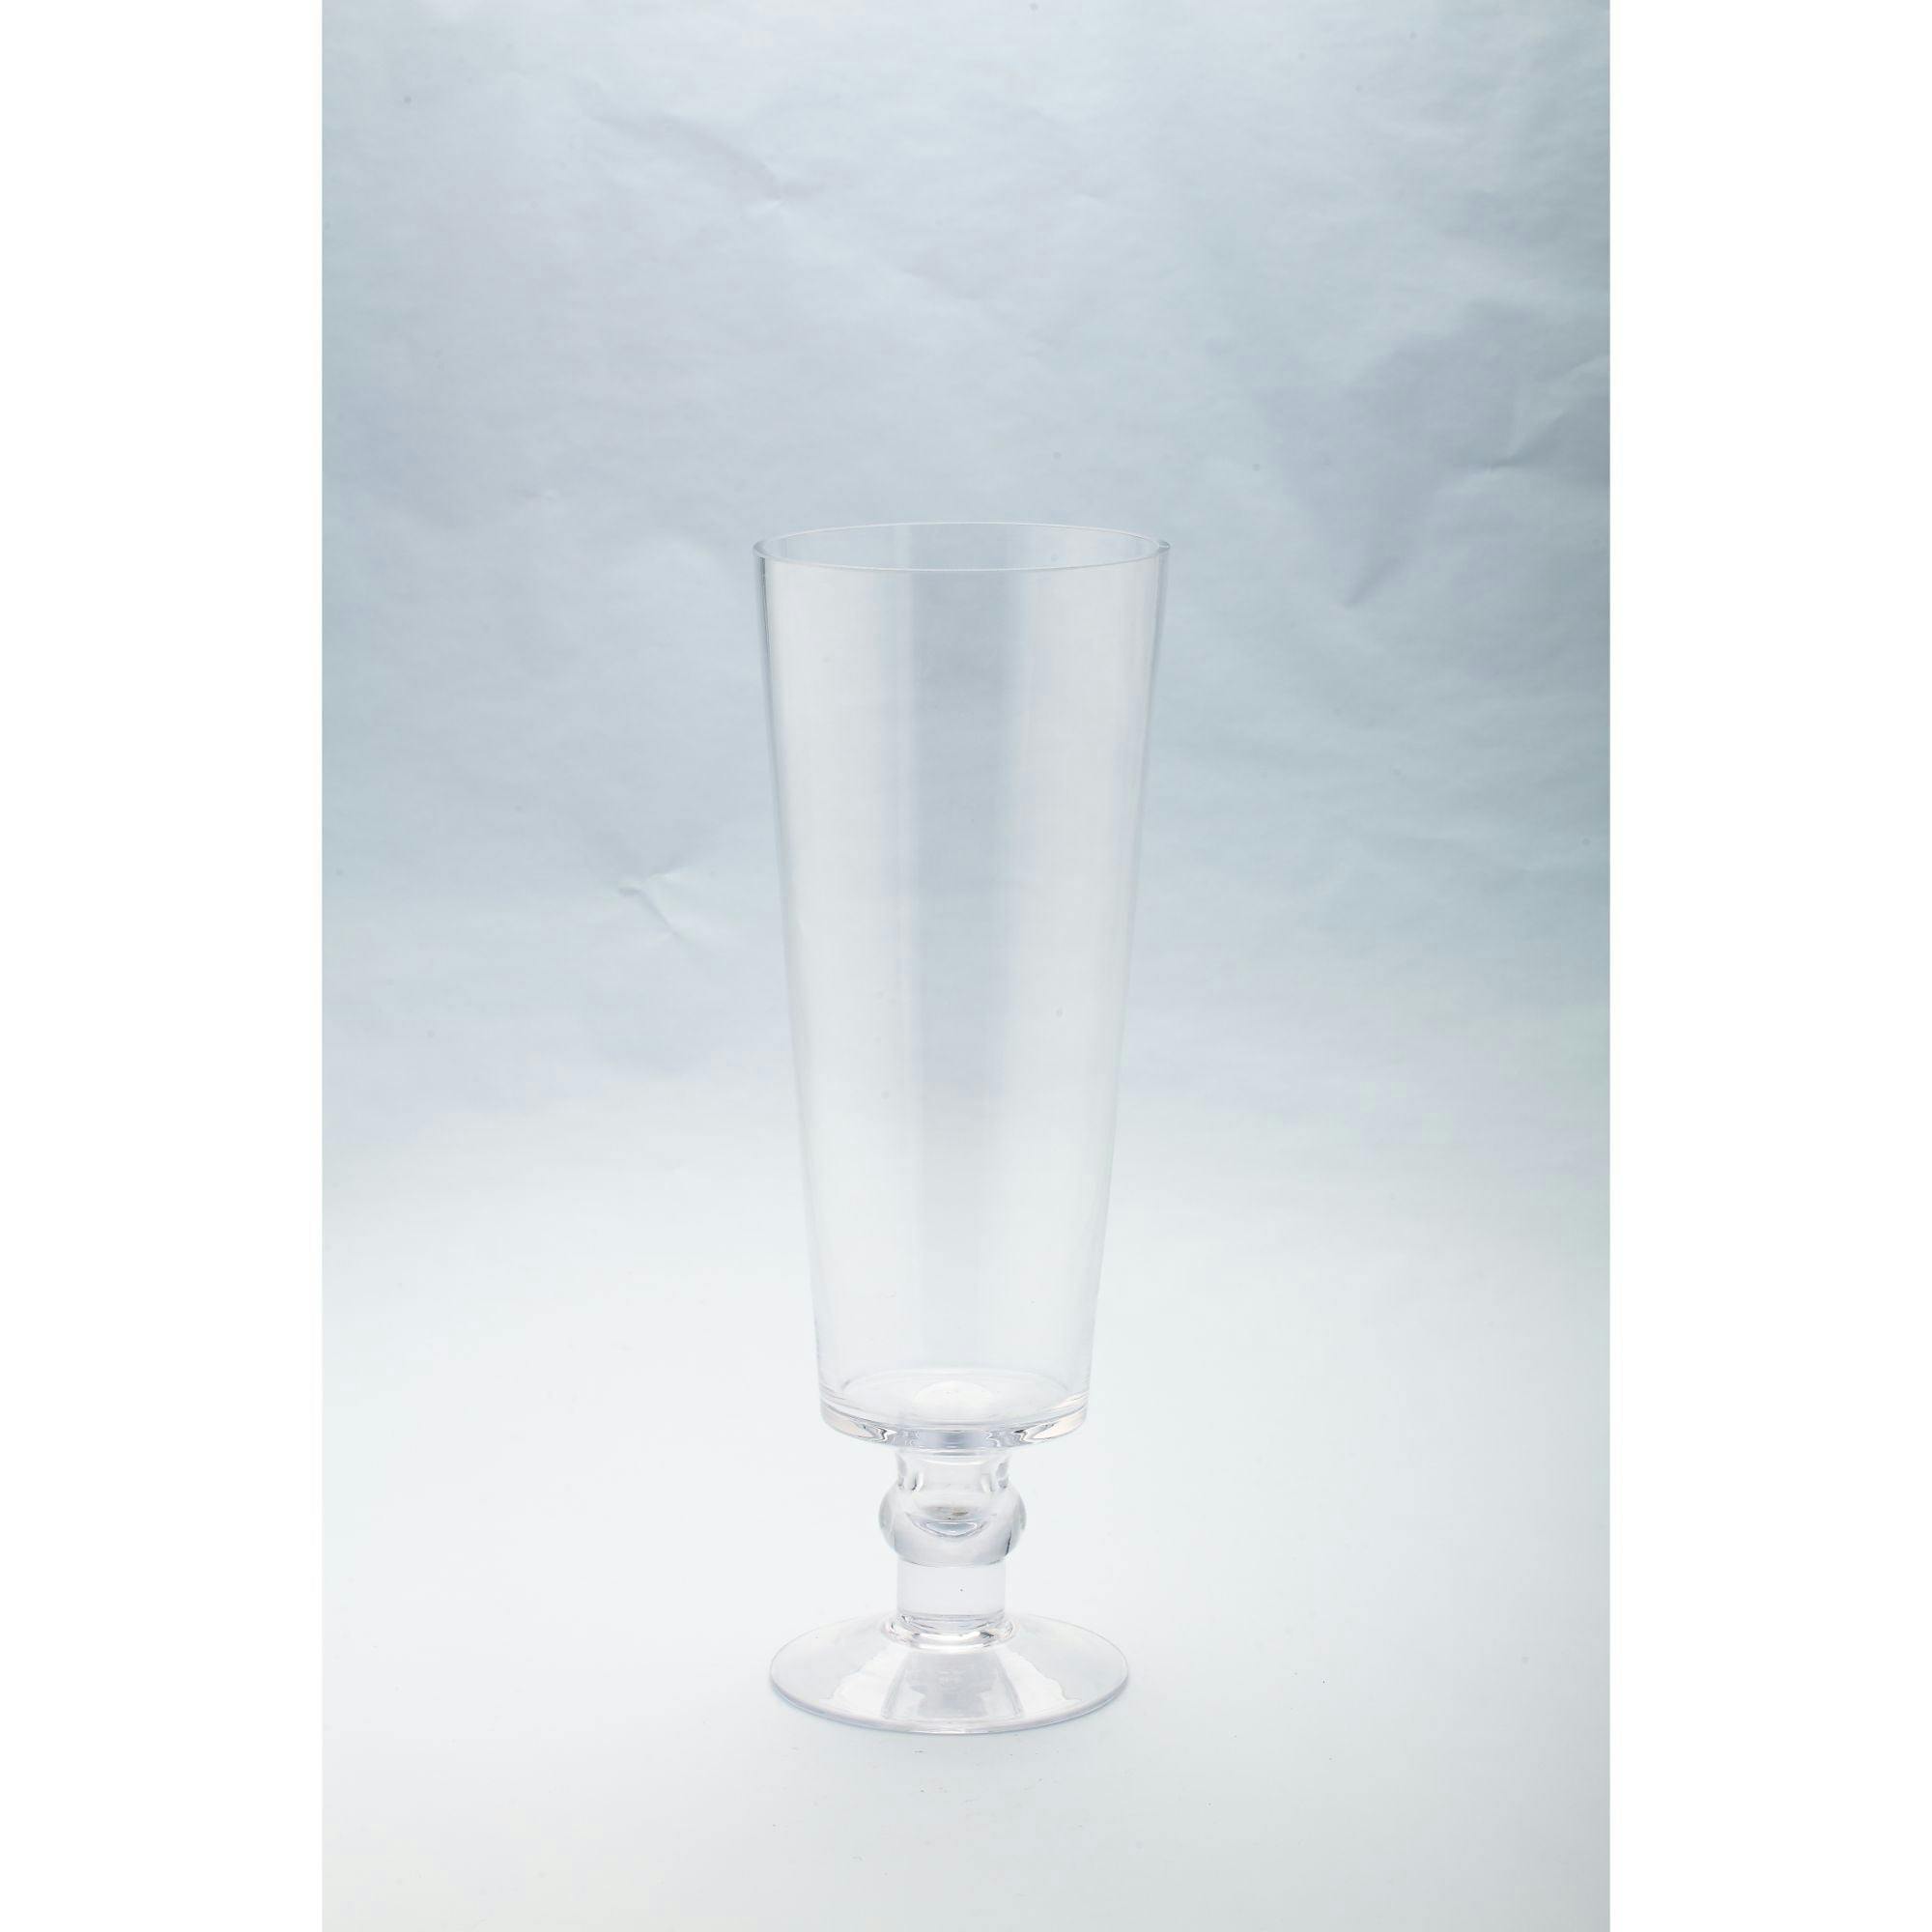 Elegant 15.5" Clear Glass Tabletop Vase for Floral Displays